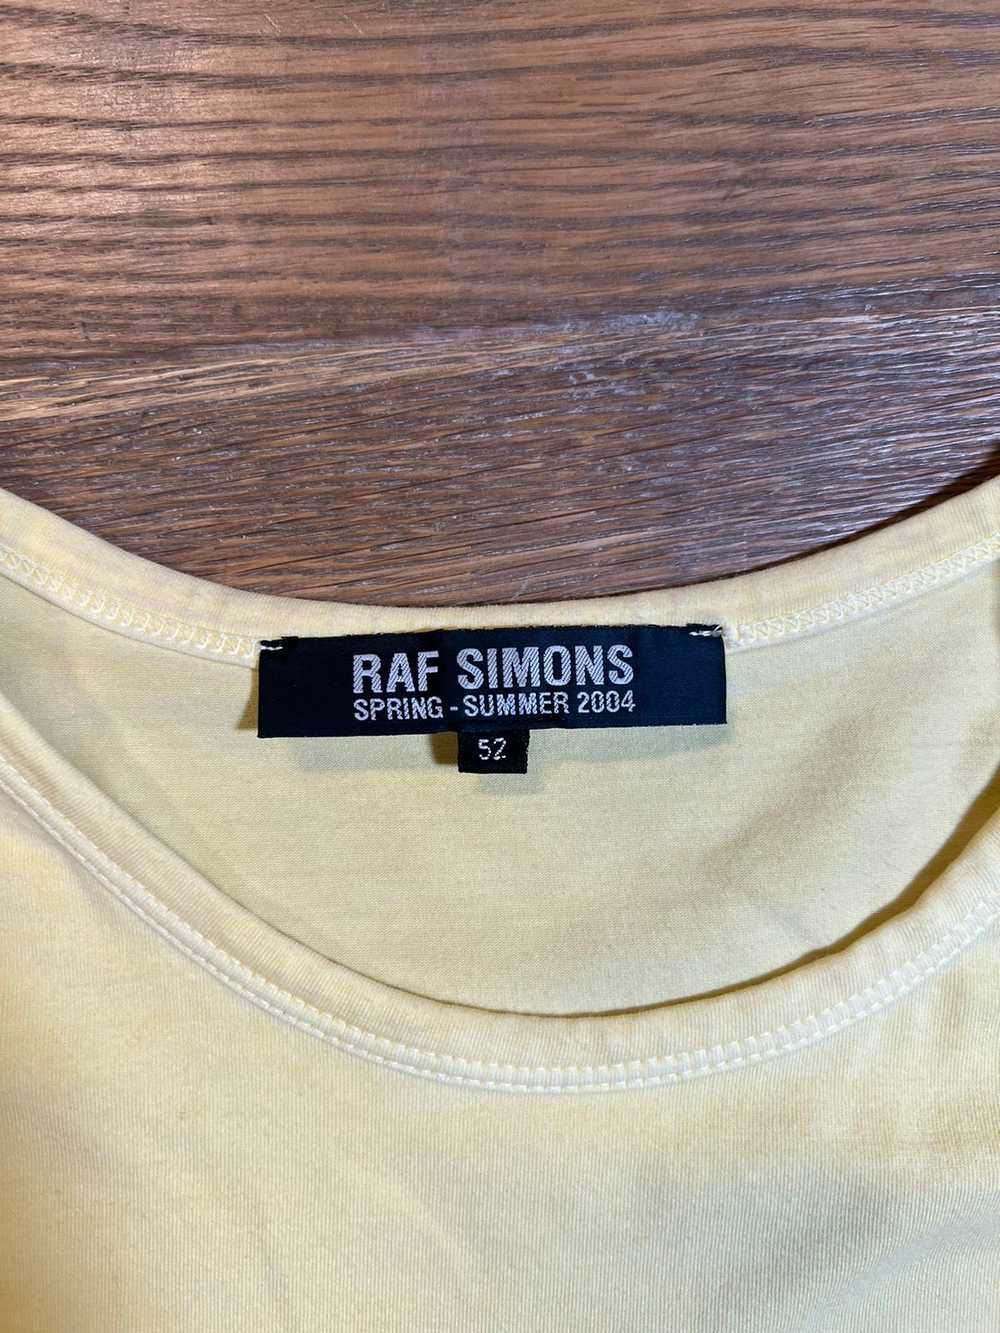 Raf Simons RAF Simon’s SS04 tee size 52 - image 3